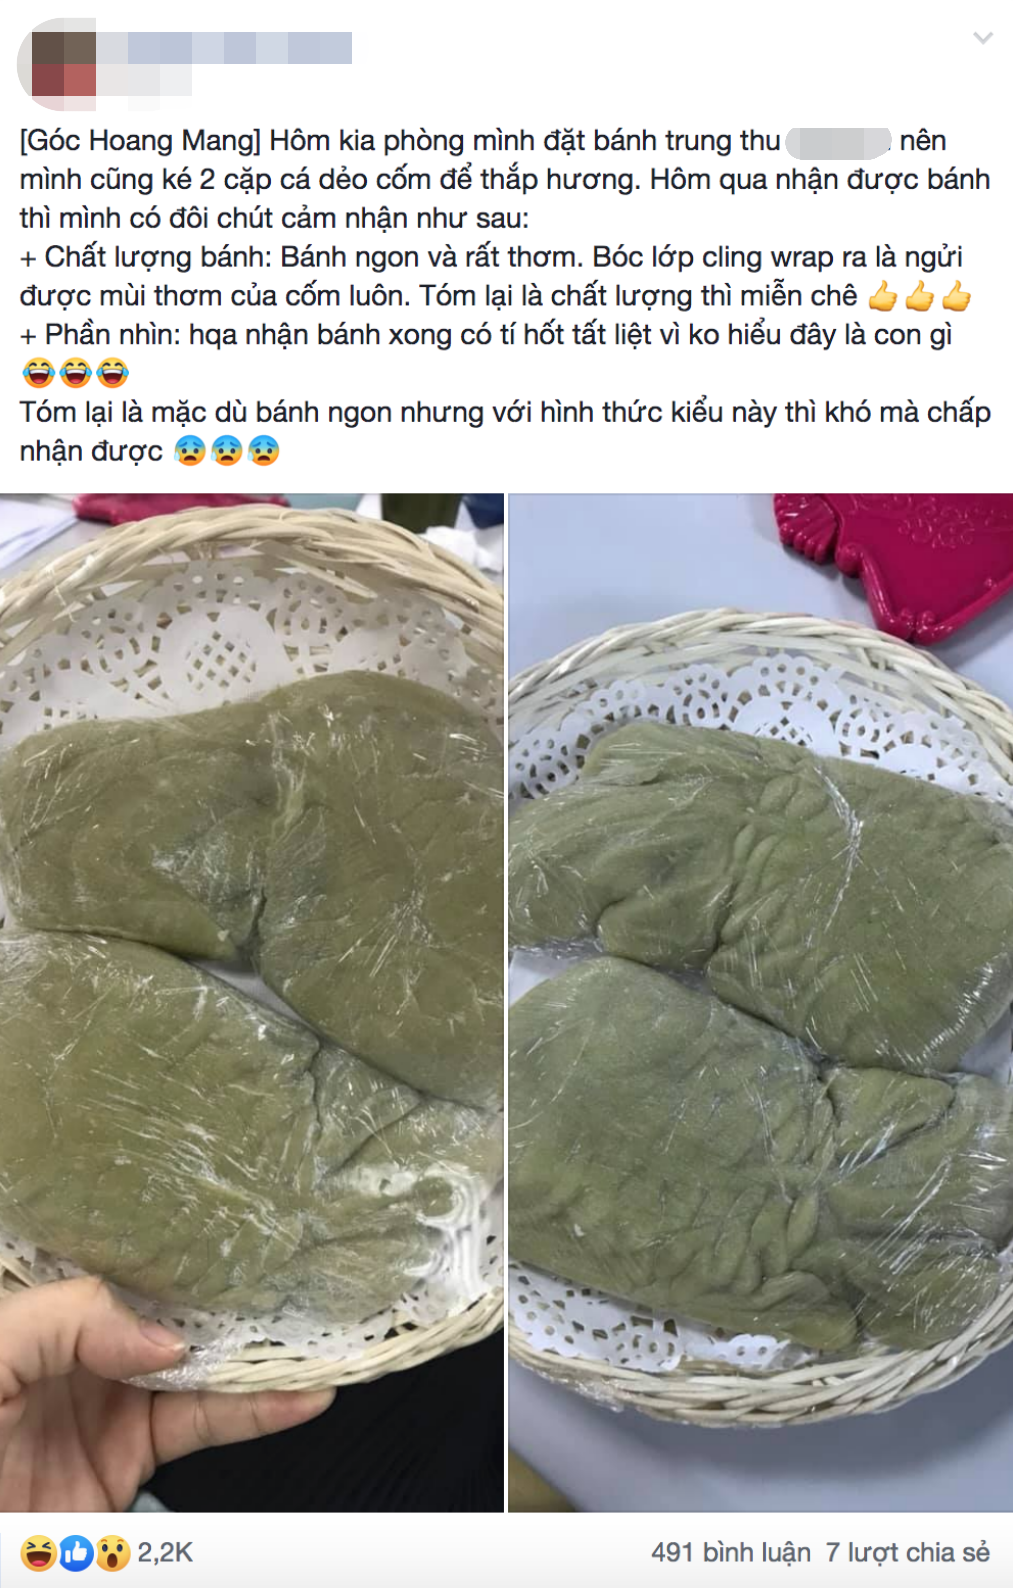 Mua online bánh Trung thu hình cá chép ở cửa hàng gia truyền, mẹ trẻ khiến dân mạng cười lăn lóc vì tưởng cá sấu-1